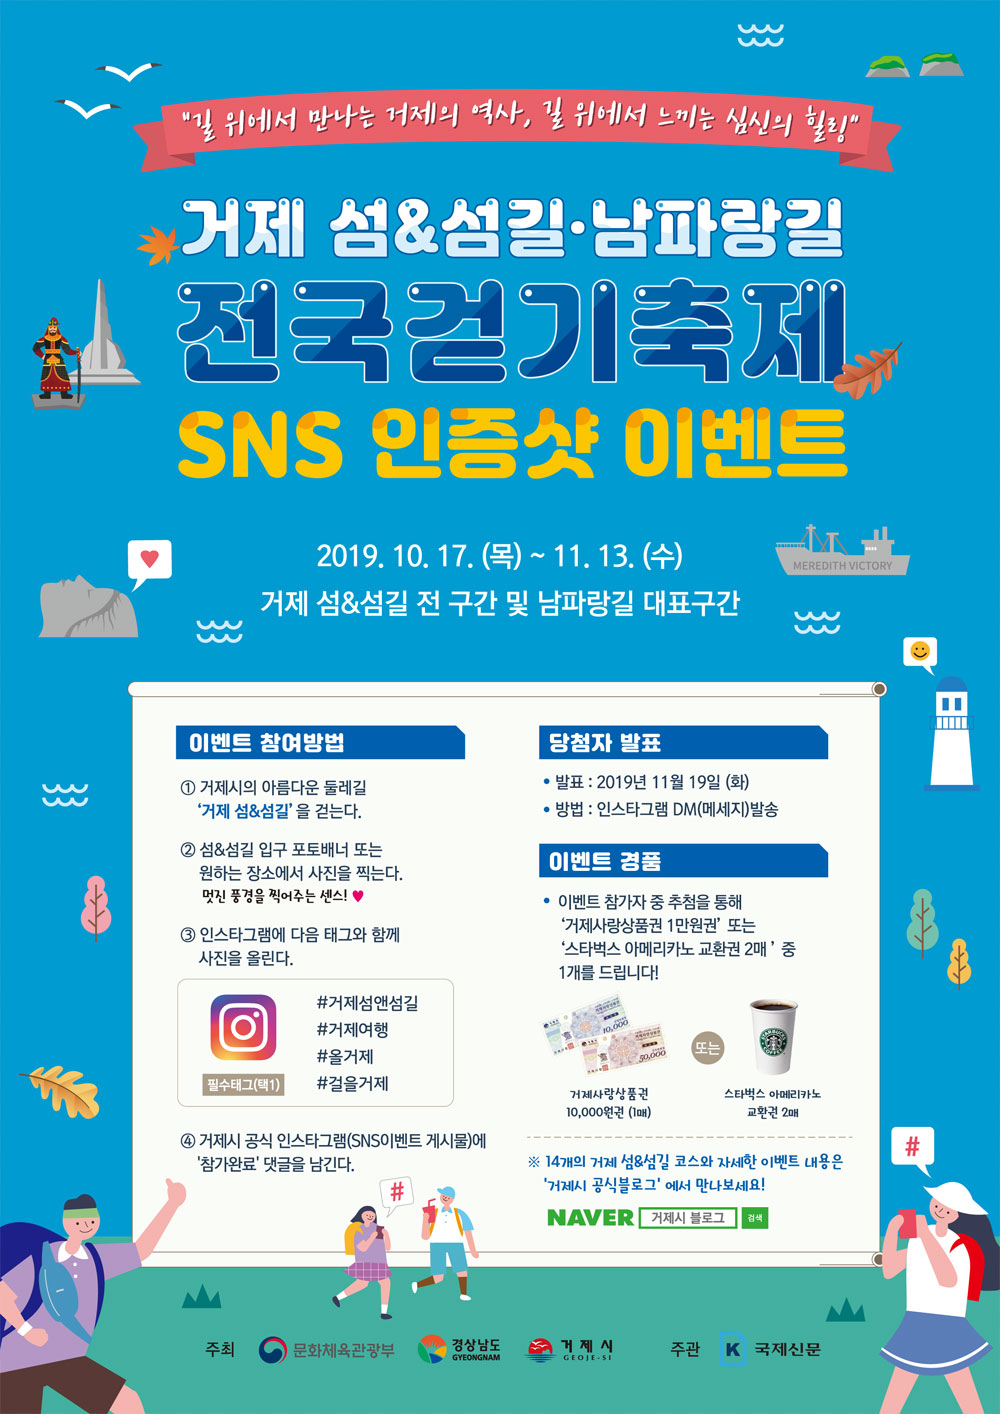 거제 섬 & 섬길·남파랑길 전국걷기축제 SNS 인증샷 이벤트 